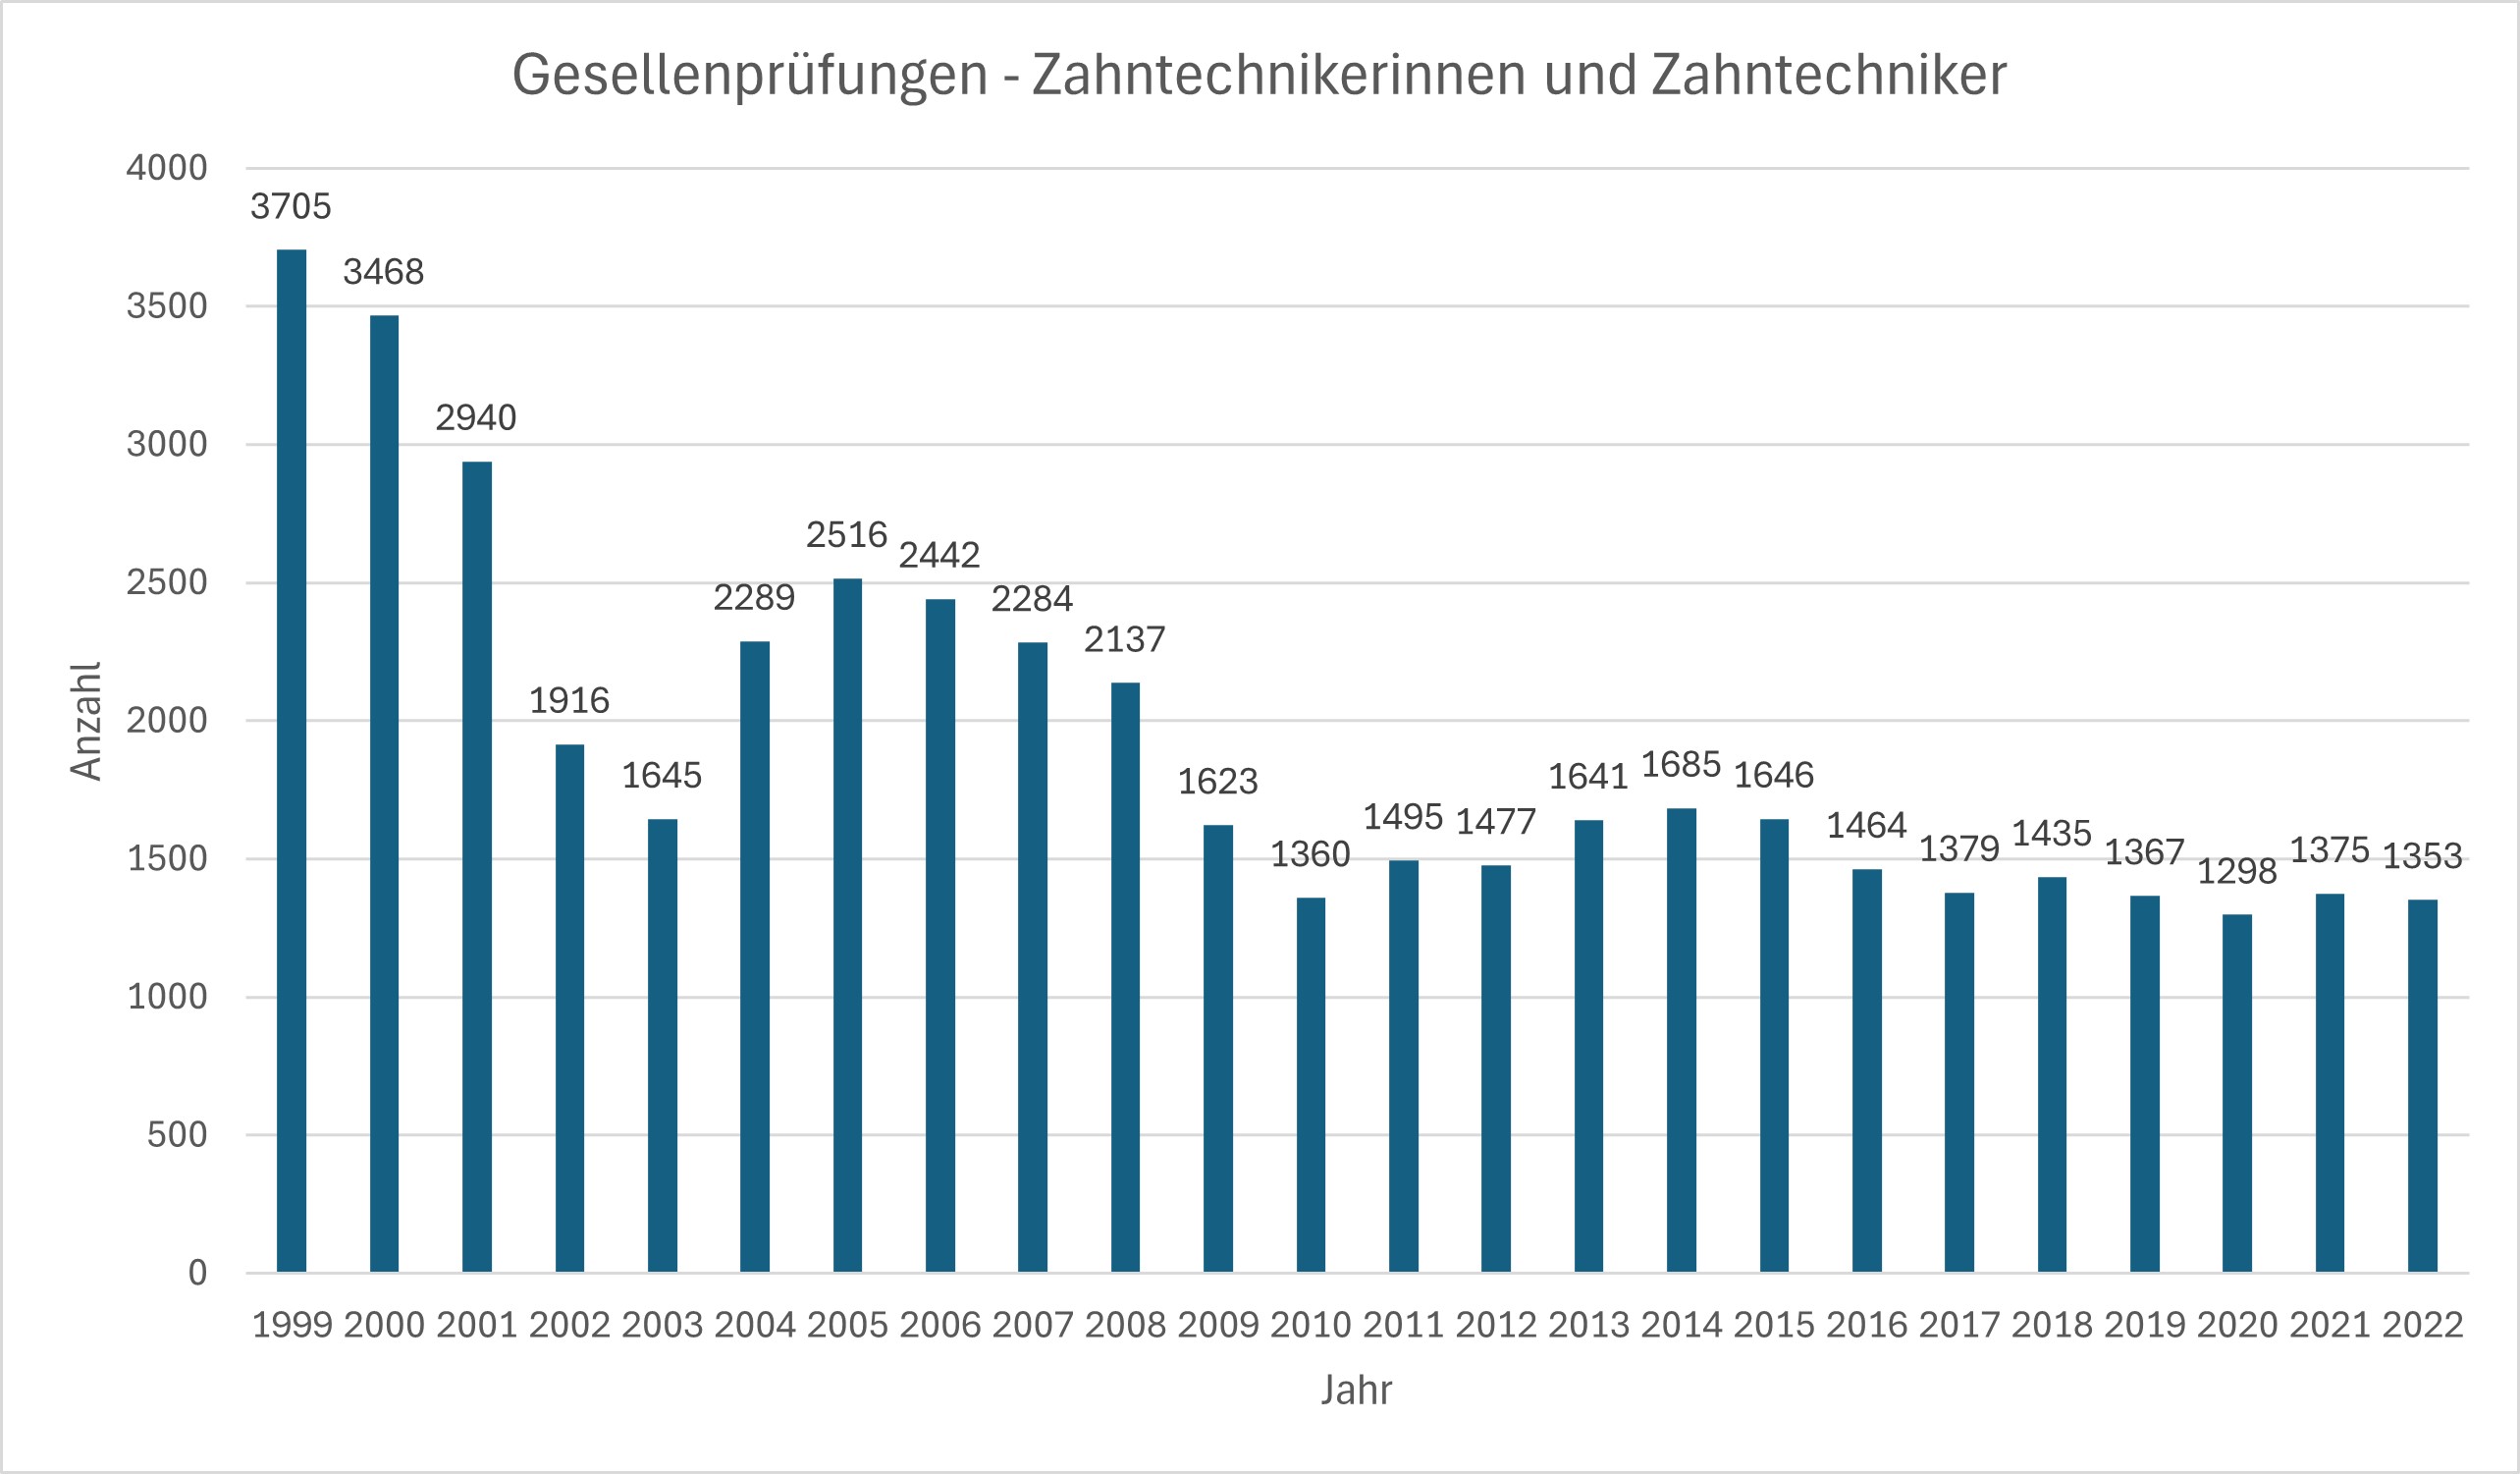 Gesellenprüfungen im Zahntechniker-Handwerk 1999-2022